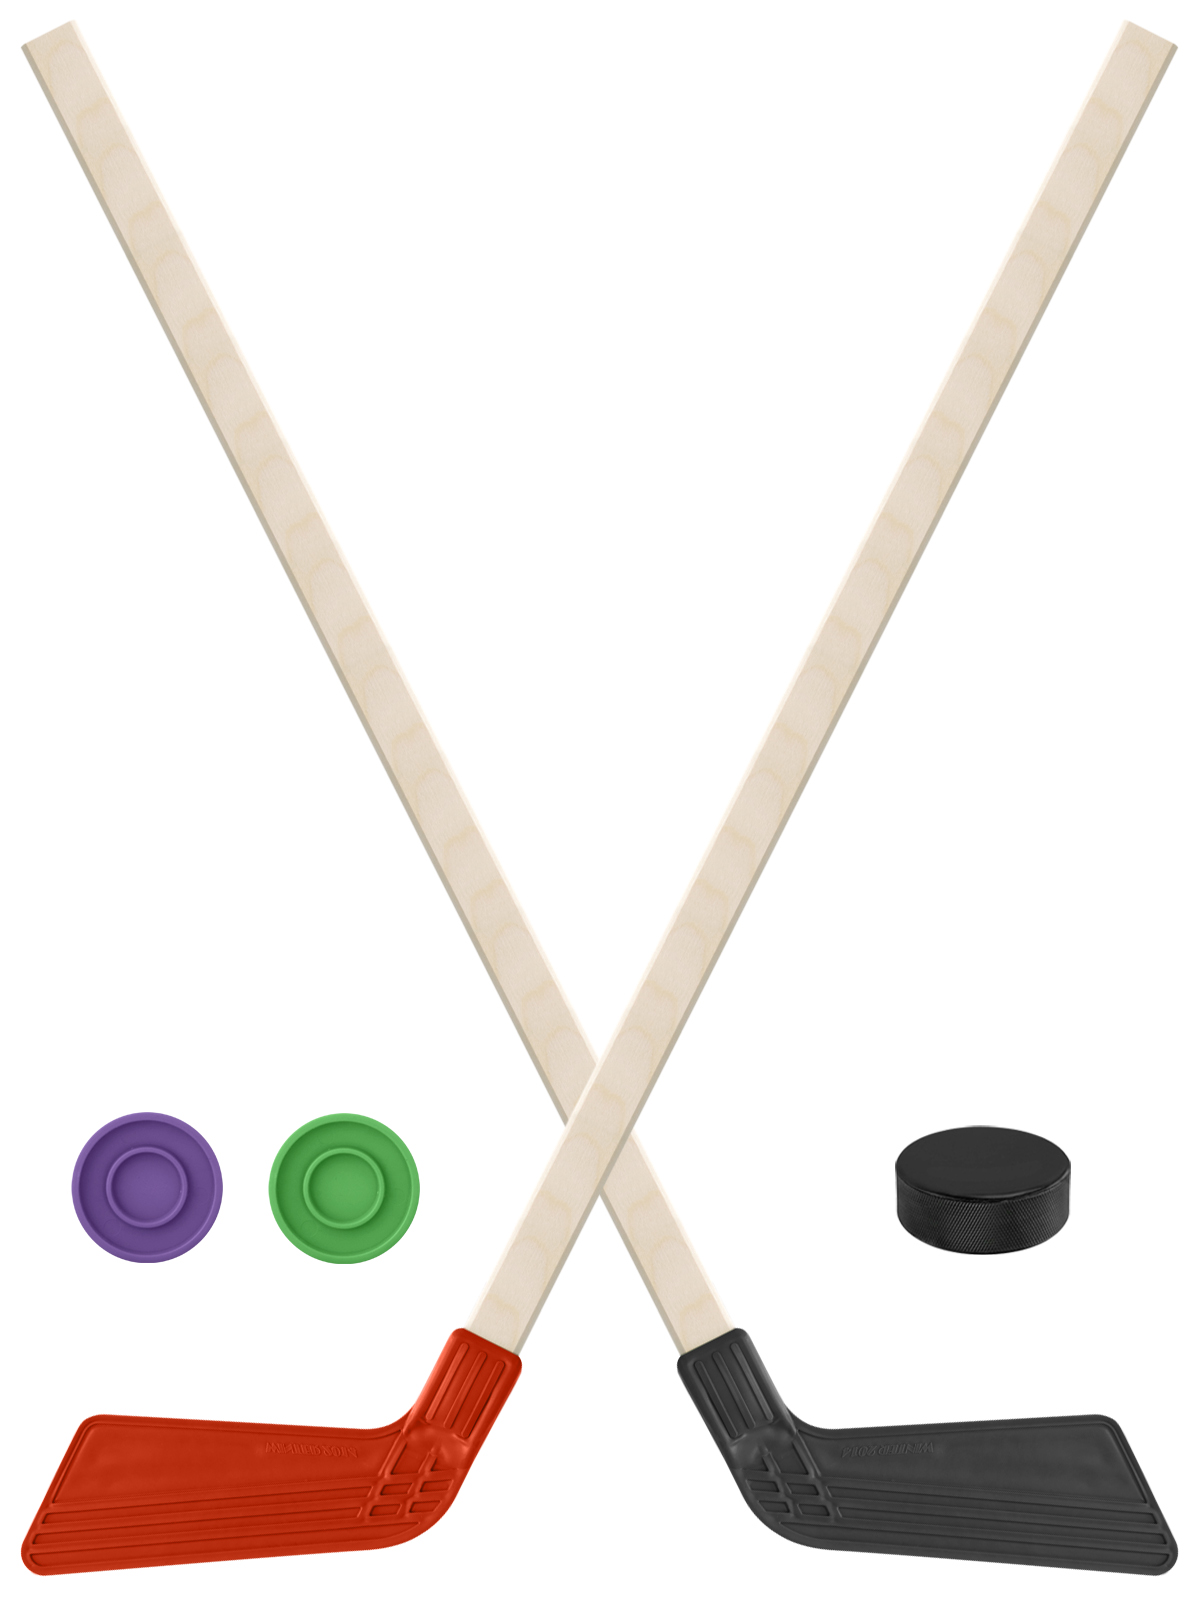 Детский хоккейный набор Задира-плюс Клюшка хоккейная 2шт(красн,чёрн) +2 шайбы+Шайба 60 мм клюшка флорбольная acito medi 35 yellow 85 round прямой